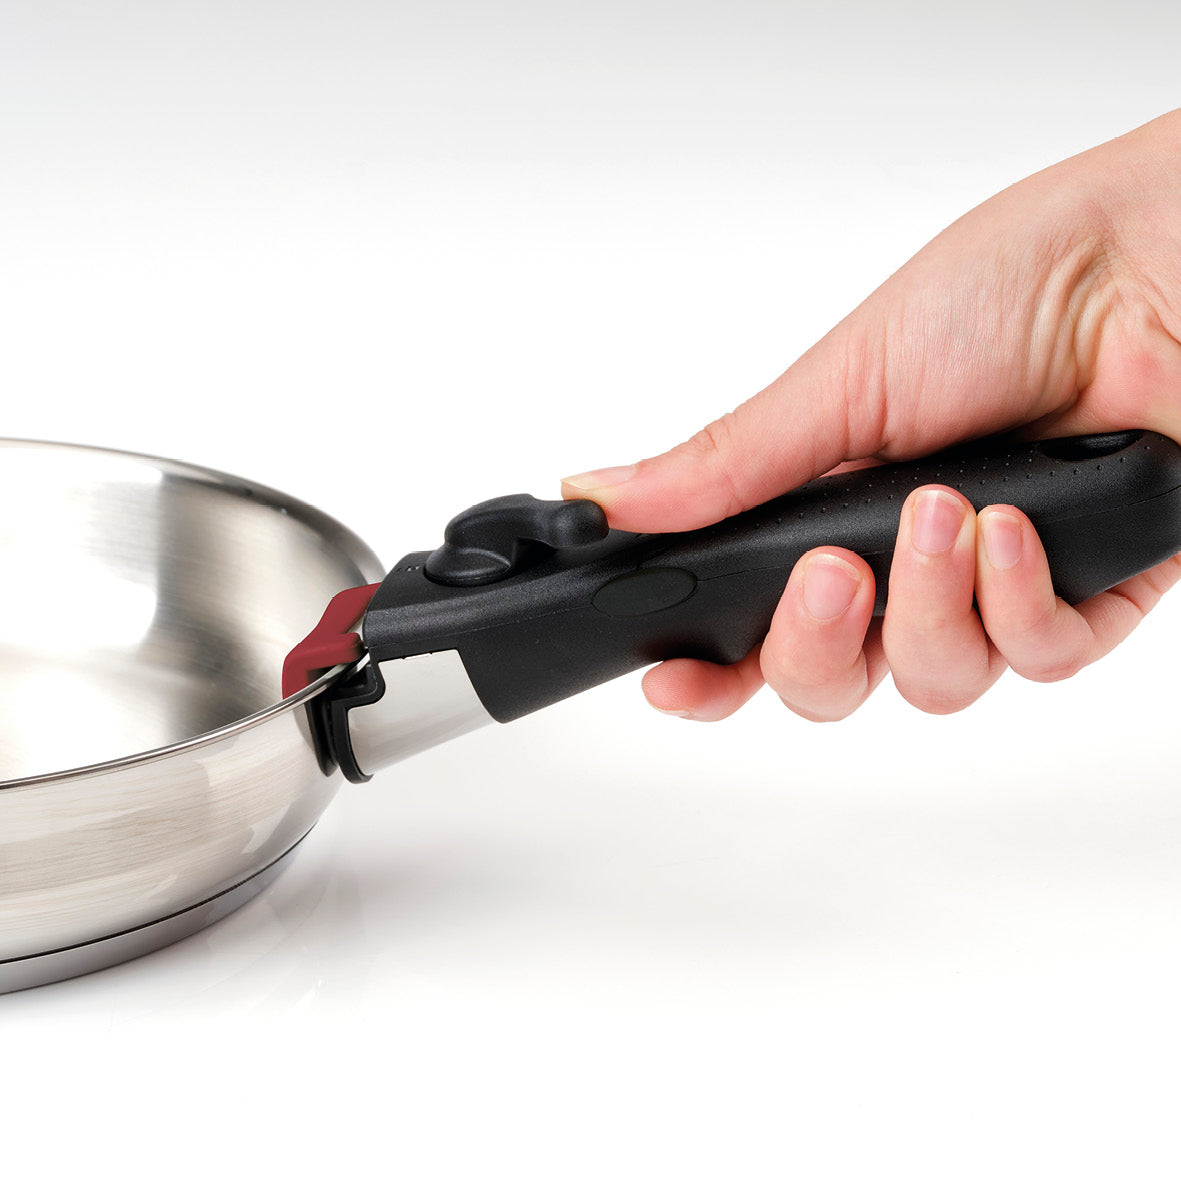 Pots and Pans Set, Nonstick Cookware Detachable/Removable Handle